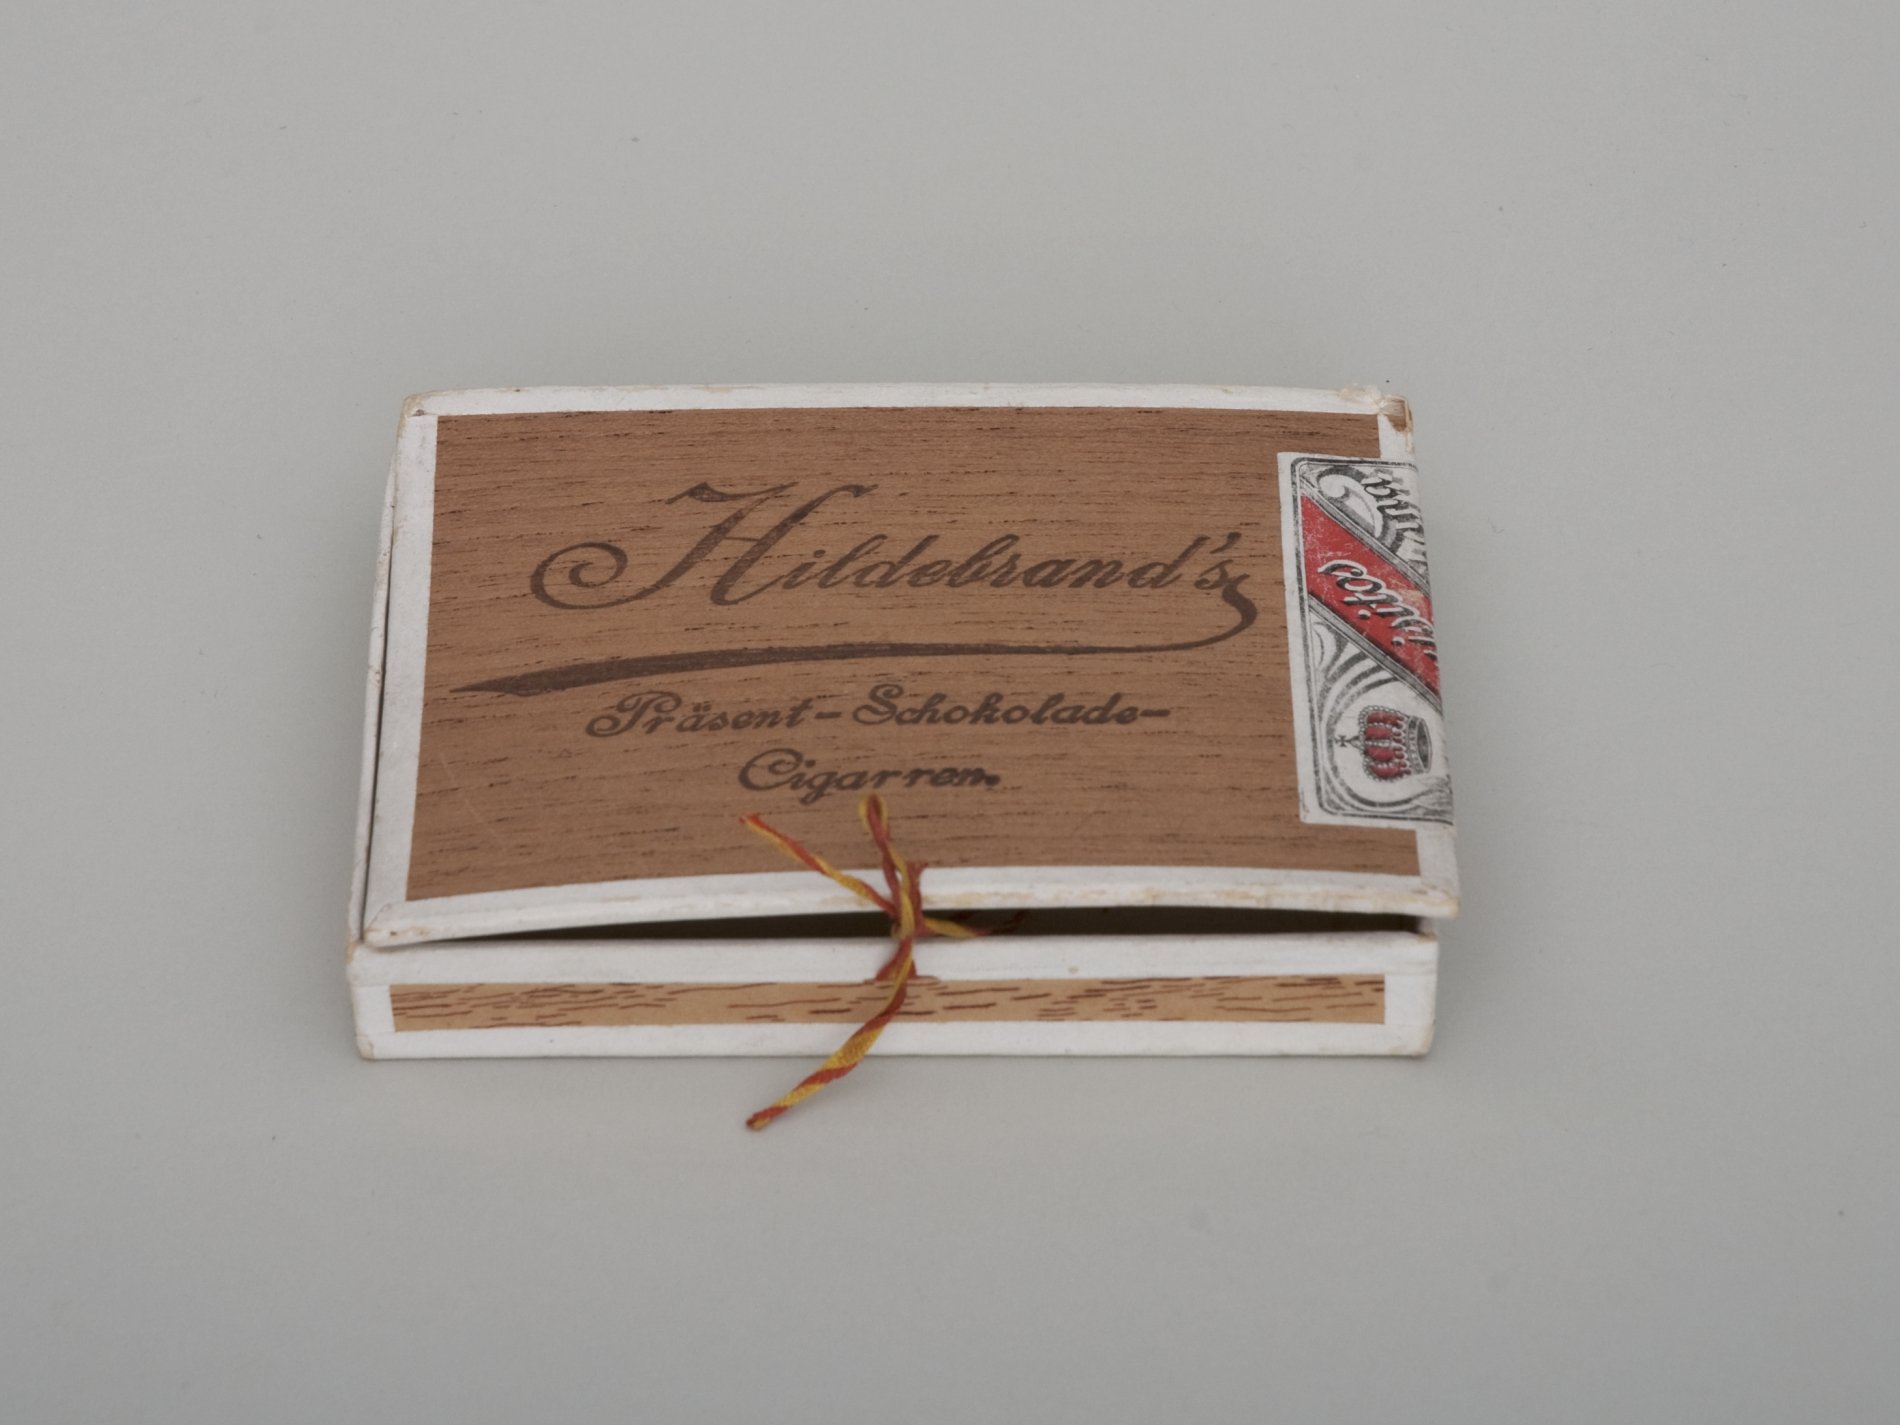 Packung "Hildebrand's Präsent-Schokolade-Cigarren" (Stiftung Domäne Dahlem - Landgut und Museum, Weiternutzung nur mit Genehmigung des Museums CC BY-NC-SA)